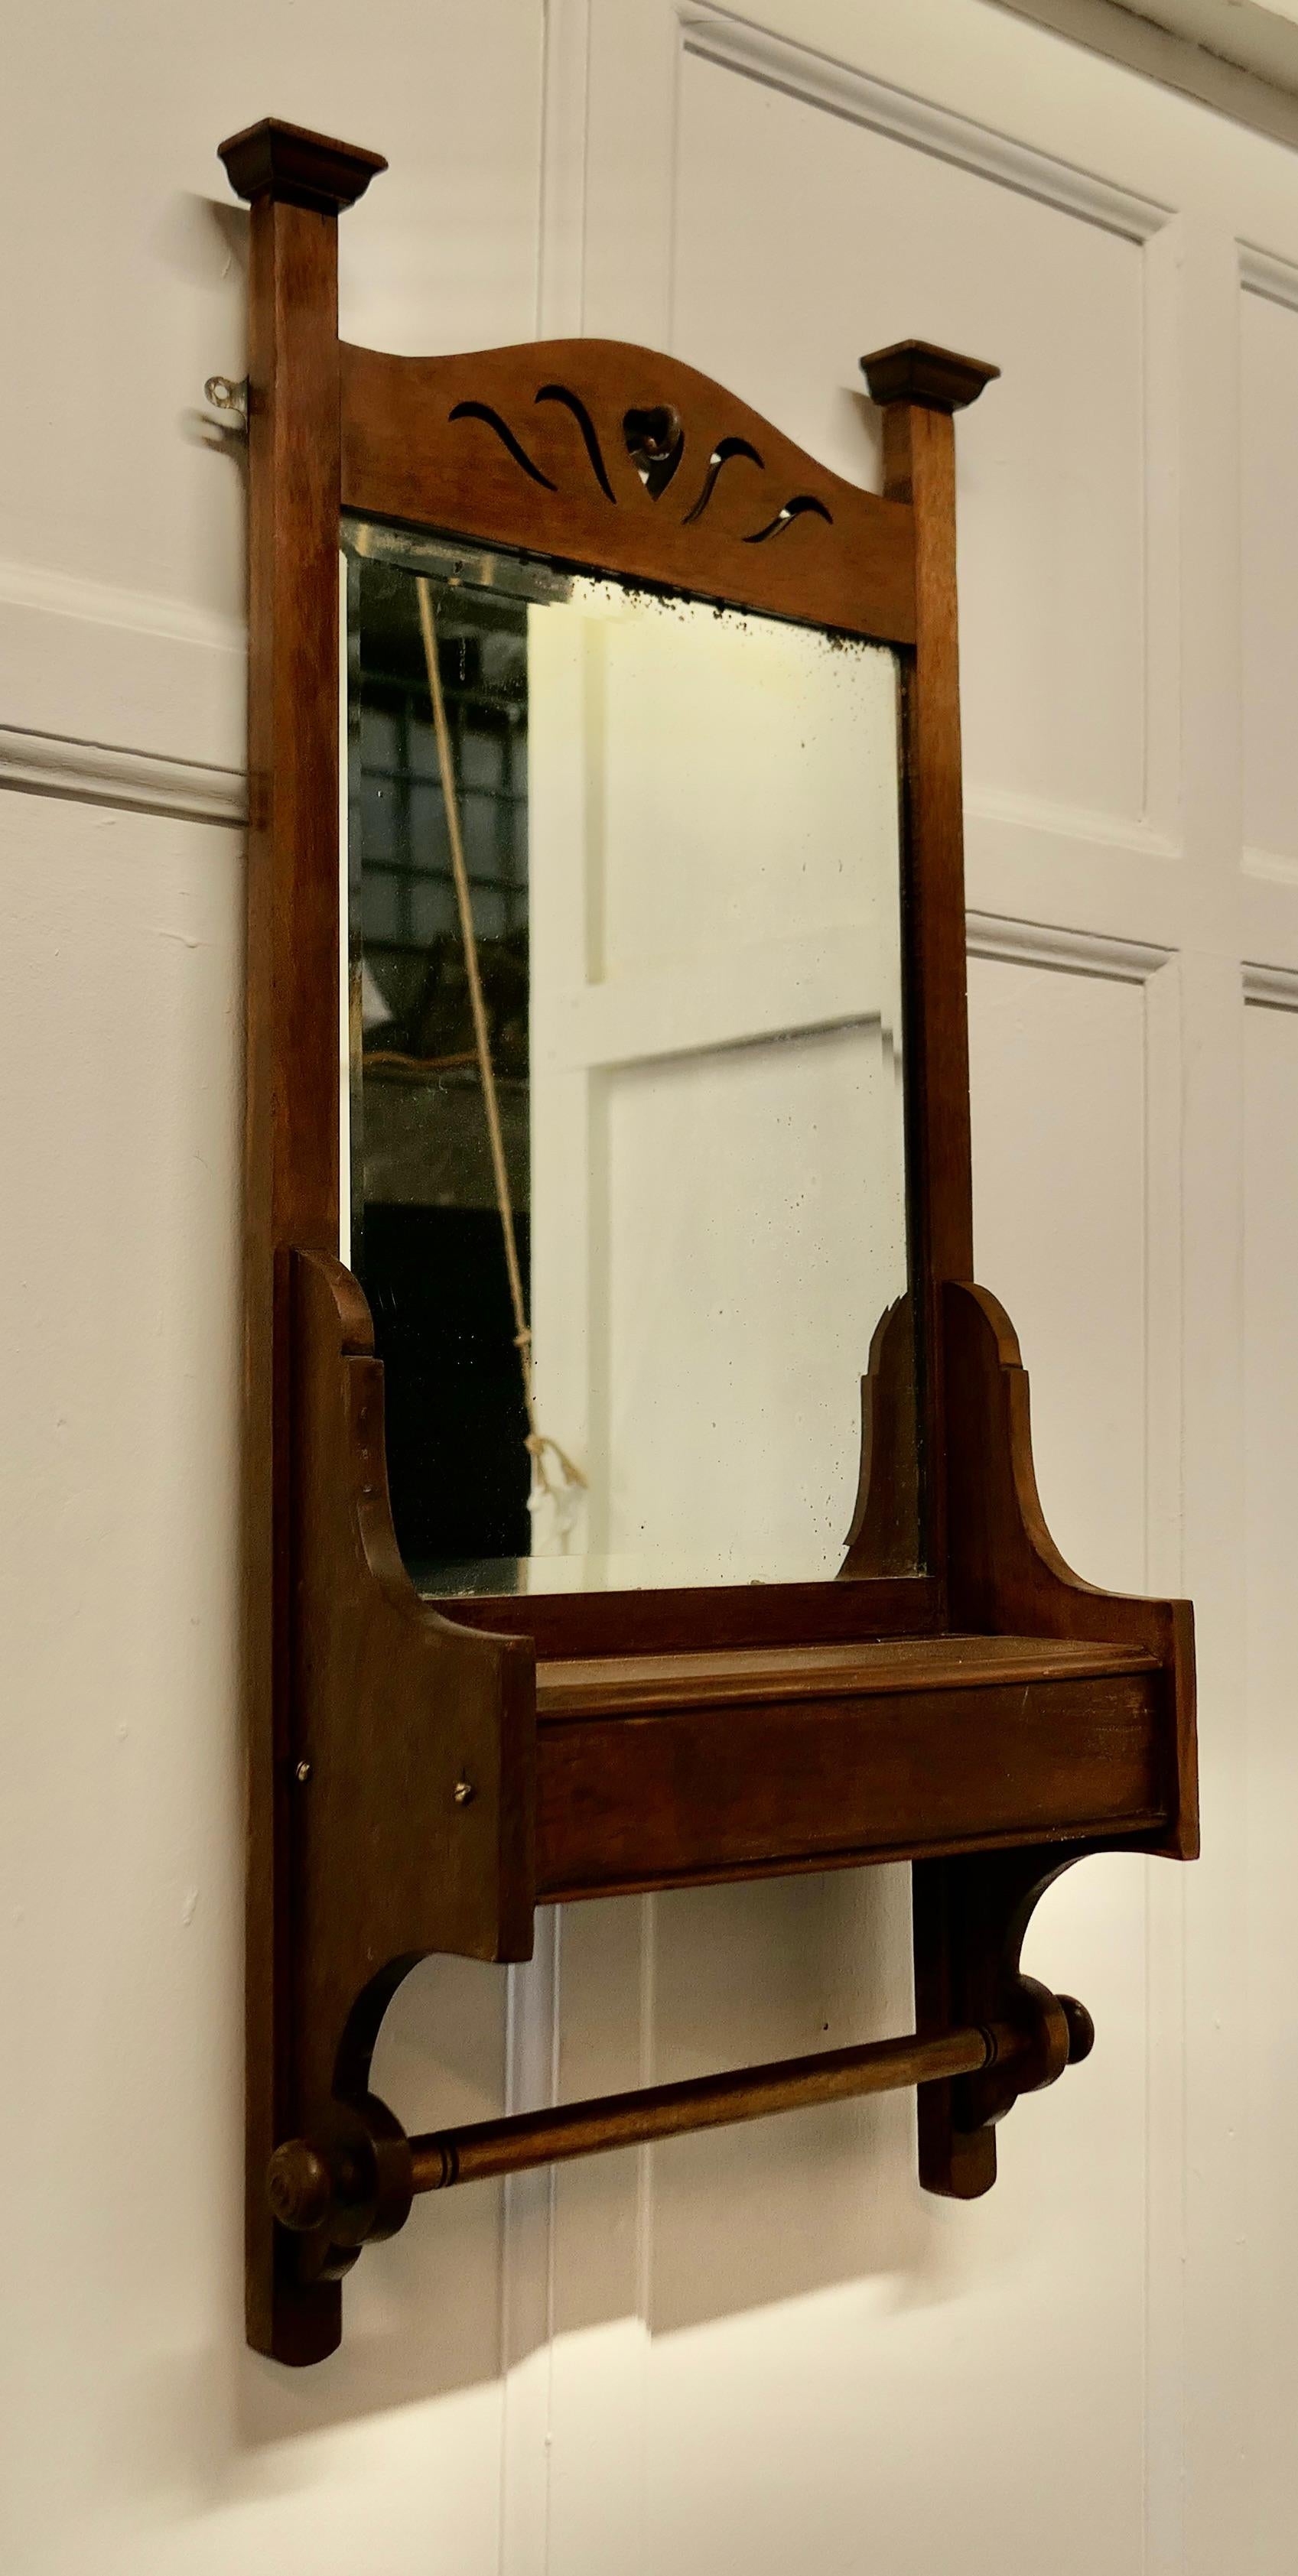 Wandspiegel mit Handtuchhalter für das Badezimmer im Stil des Arts and Crafts

Ein sehr attraktives Stück, das sich sehr gut in einem Badezimmer oder einer Garderobe machen würde.
Unter dem Spiegel befindet sich eine kleine Ablage, die